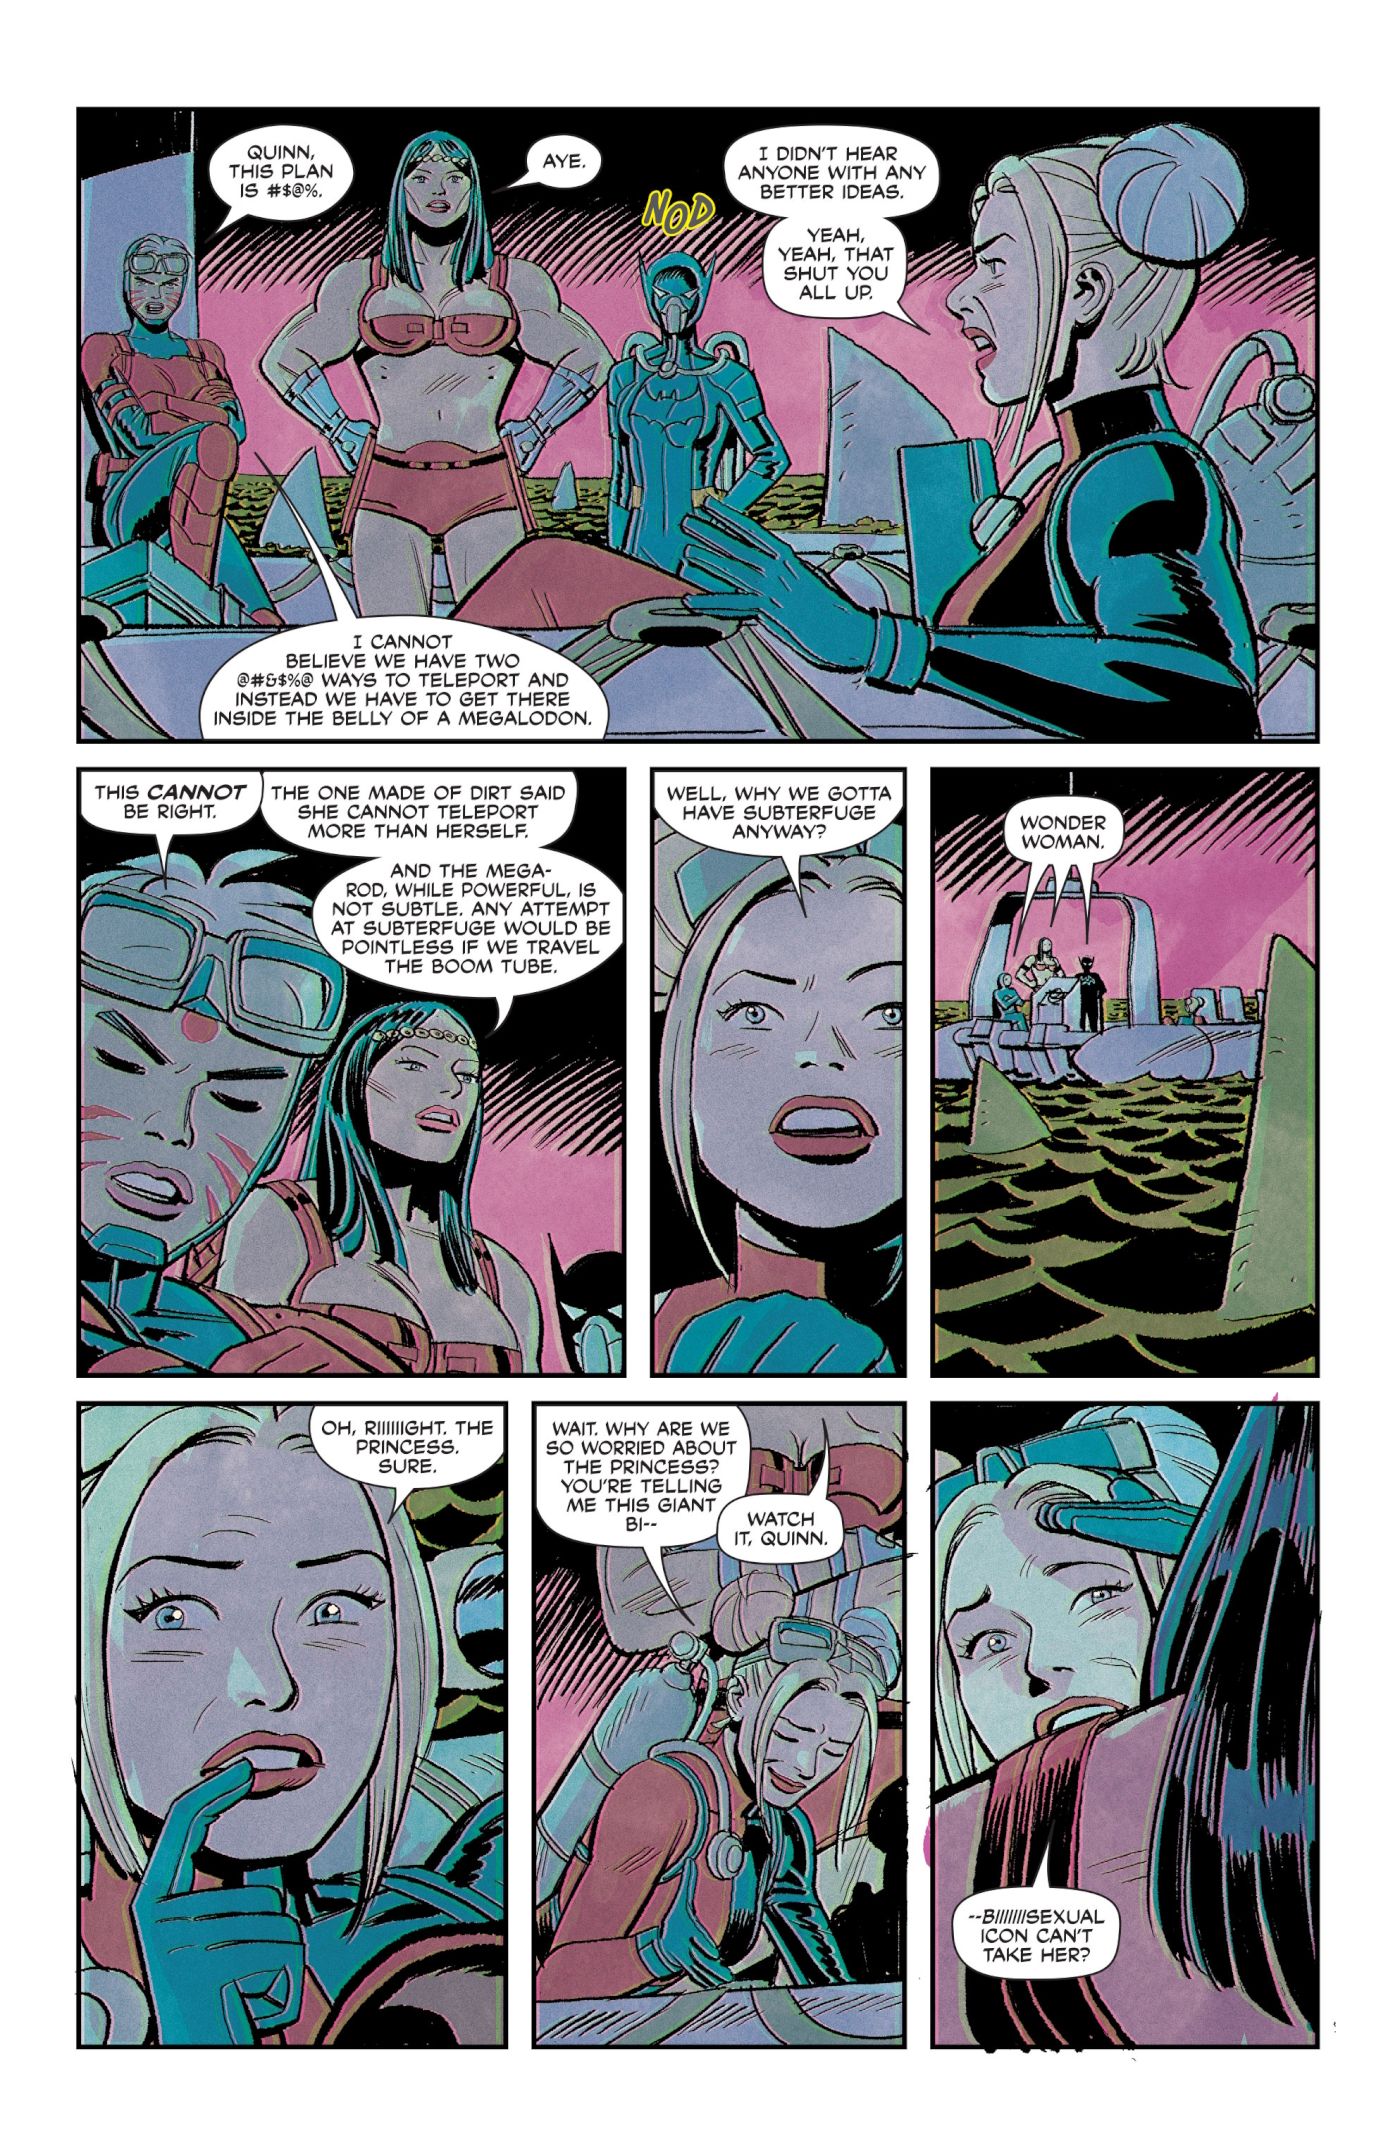 Vorschau auf „Birds of Prey #3“, Harley Quinn hat einen Plan